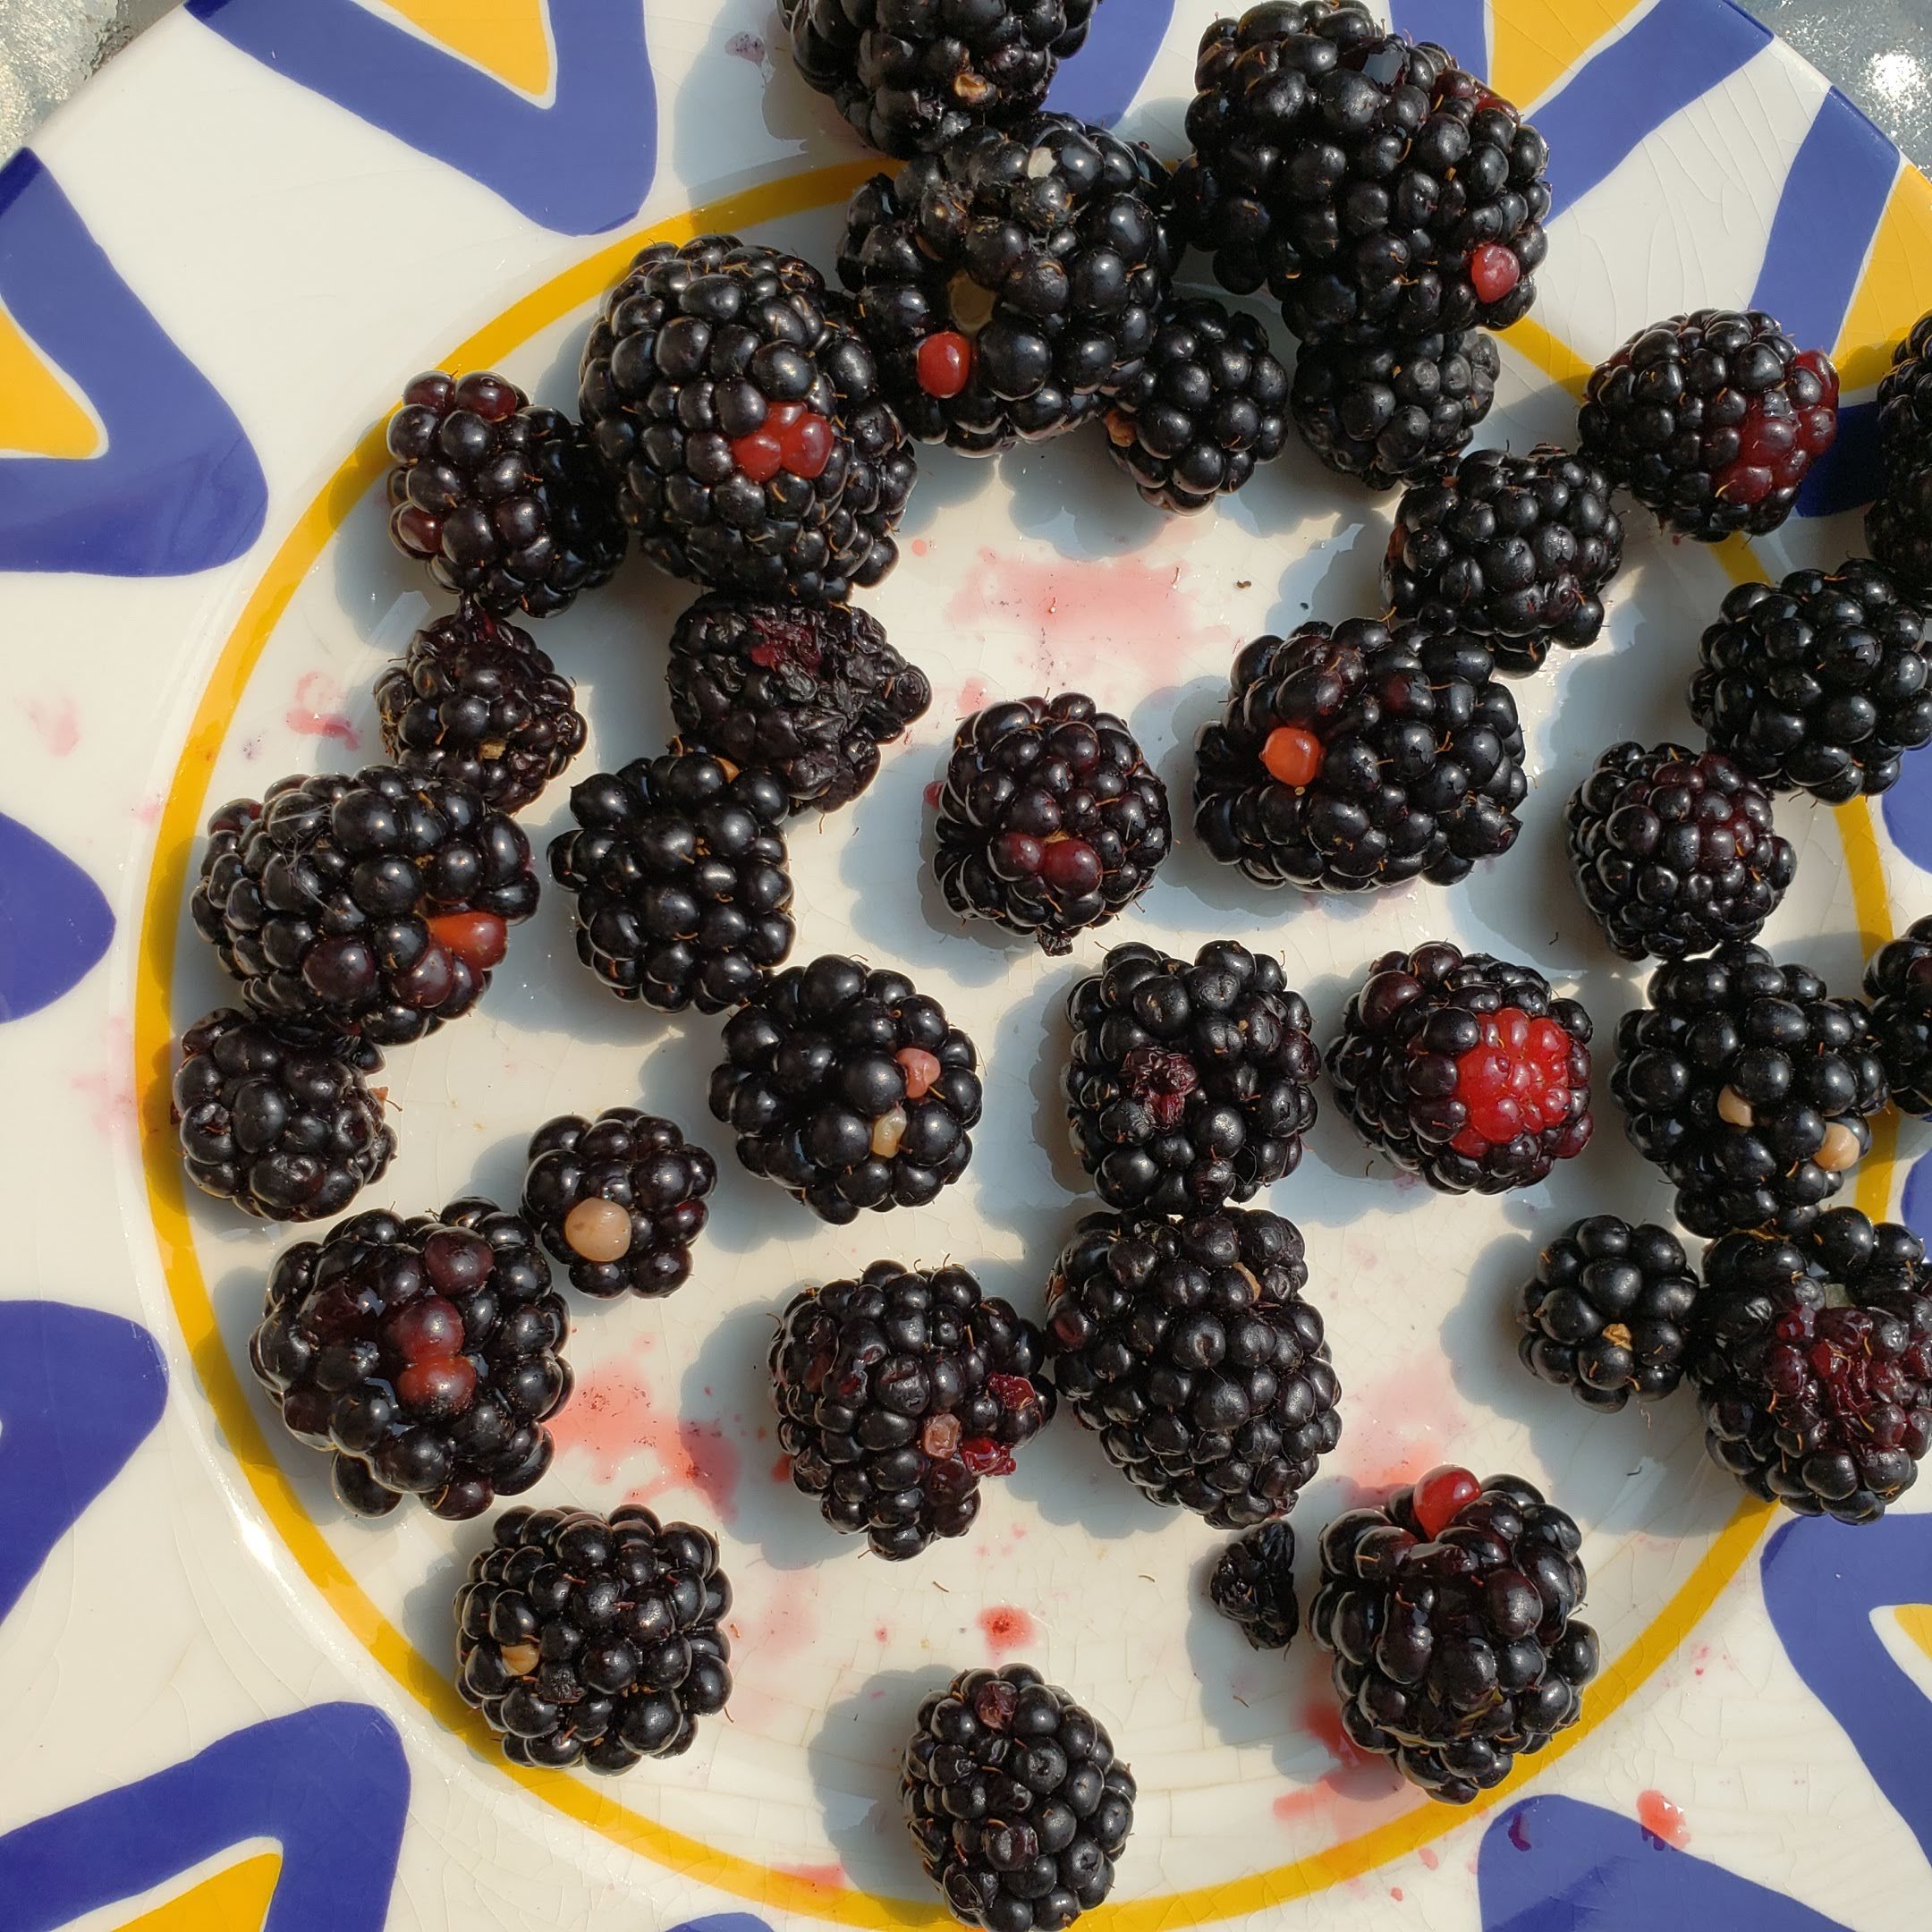 White Drupelet Disorder: What Causes White Spots On Raspberries and  Blackberries